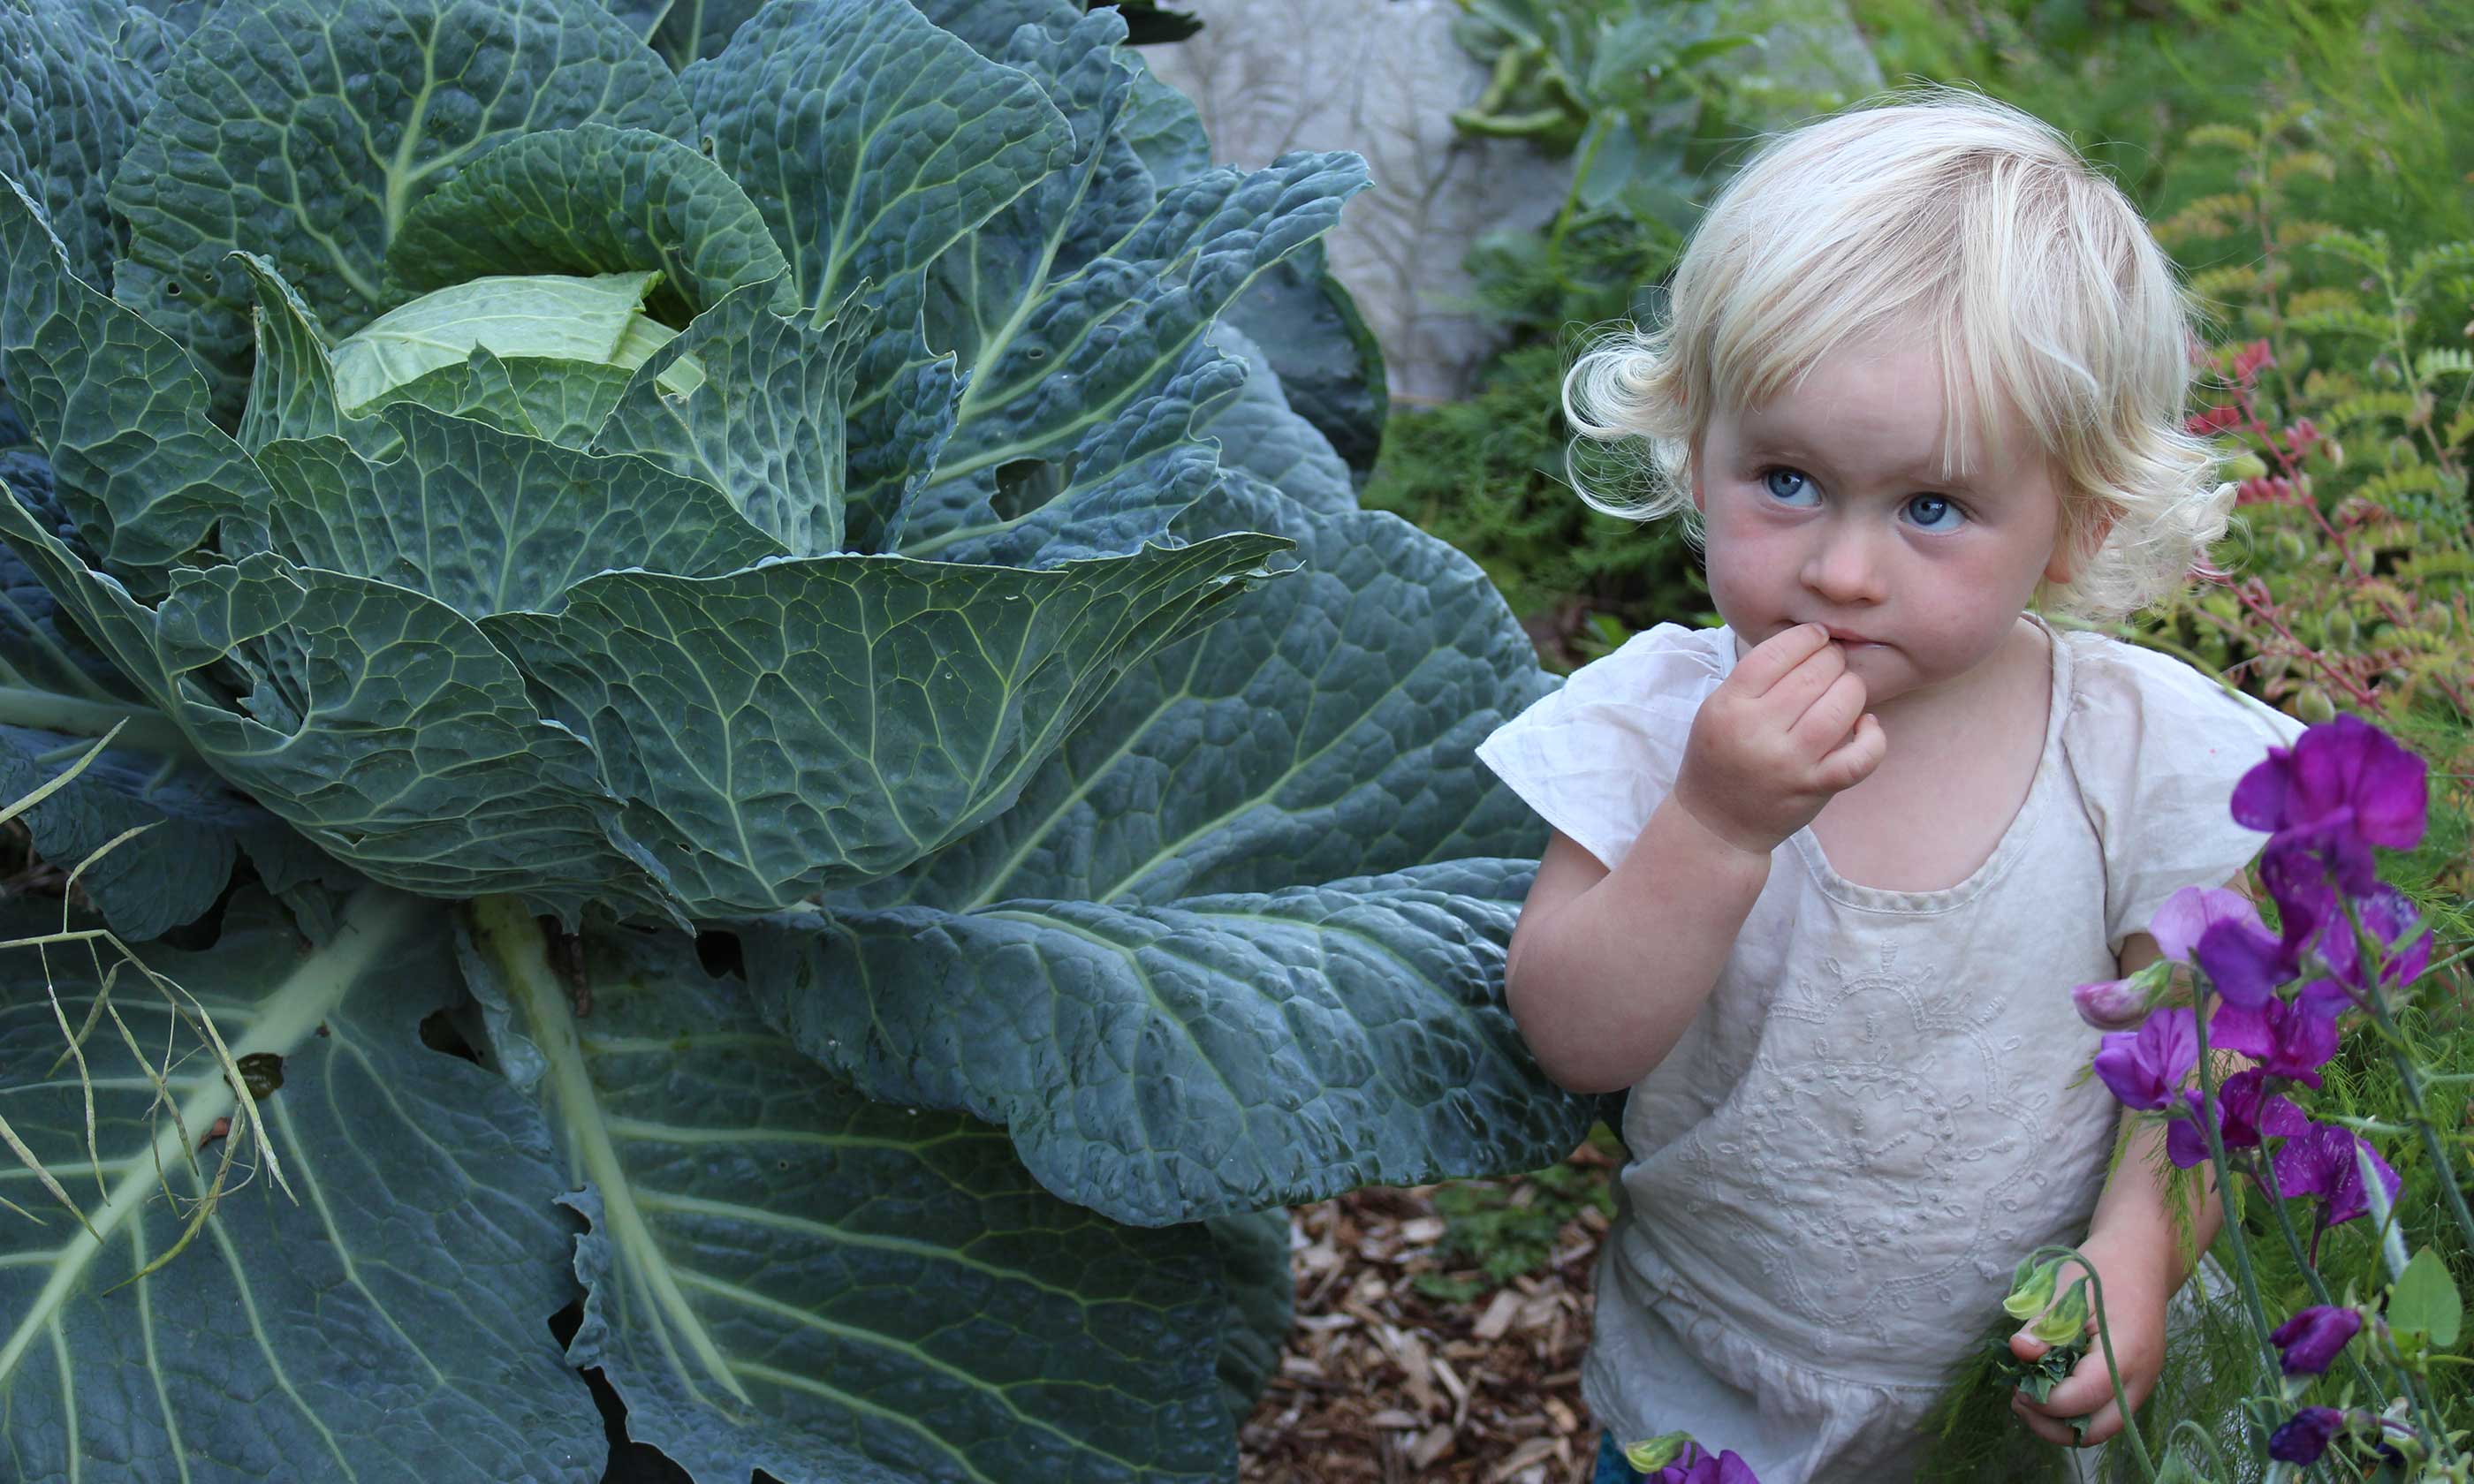 Child in a vegetable garden